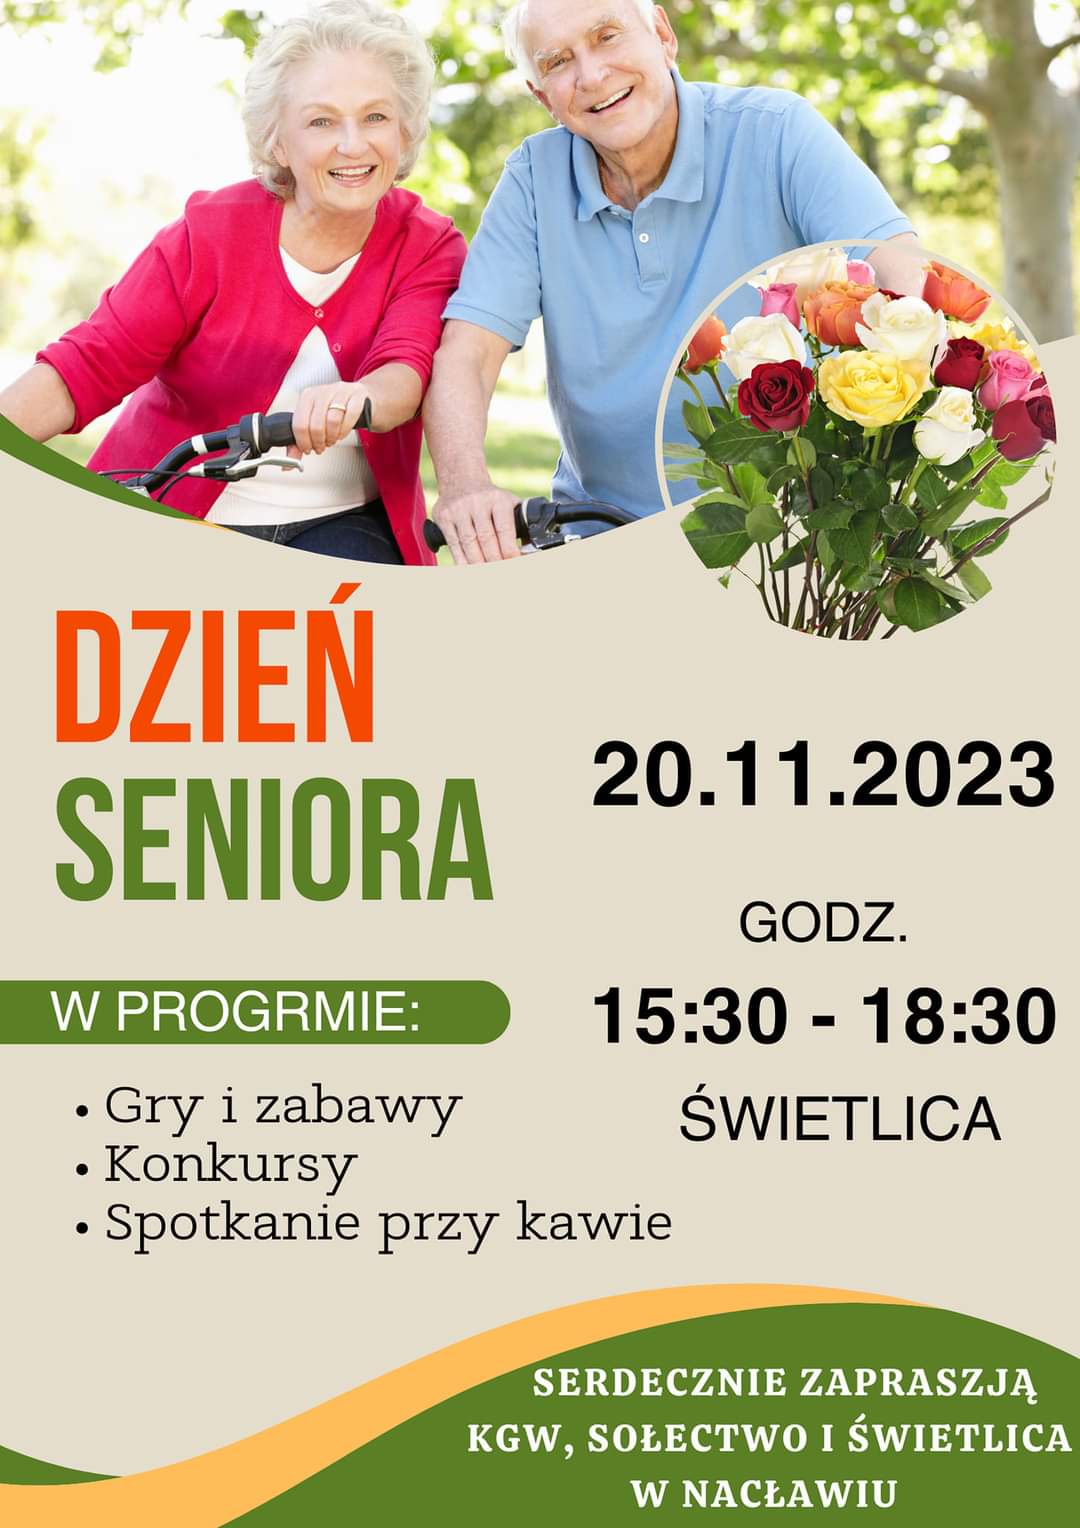 Plakat z zaproszeniem na dzień seniora 20 listopada w świetlicy w Nacławiu